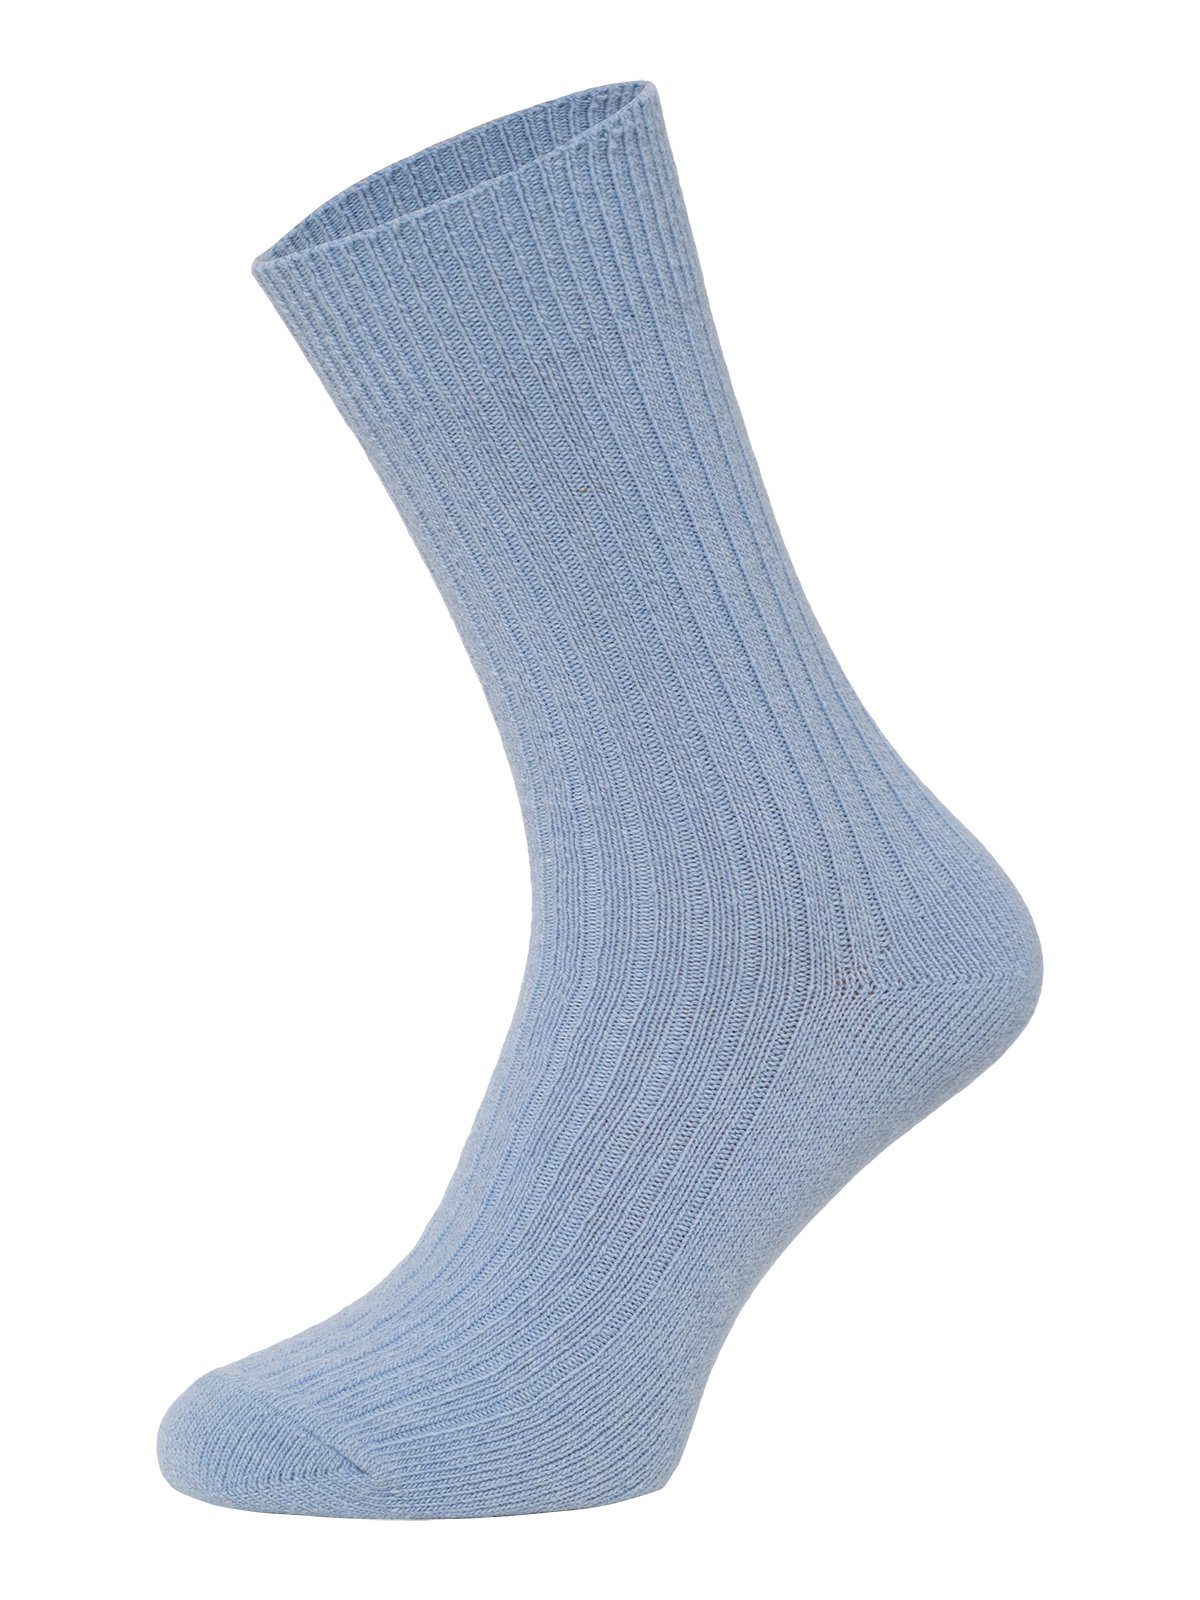 mit Bunte HomeOfSocks Wollanteil Dünne Wollsocken Wollsocken 72% Druckarm Uni Socken Hochwertige Hellblau Dünn Bunt